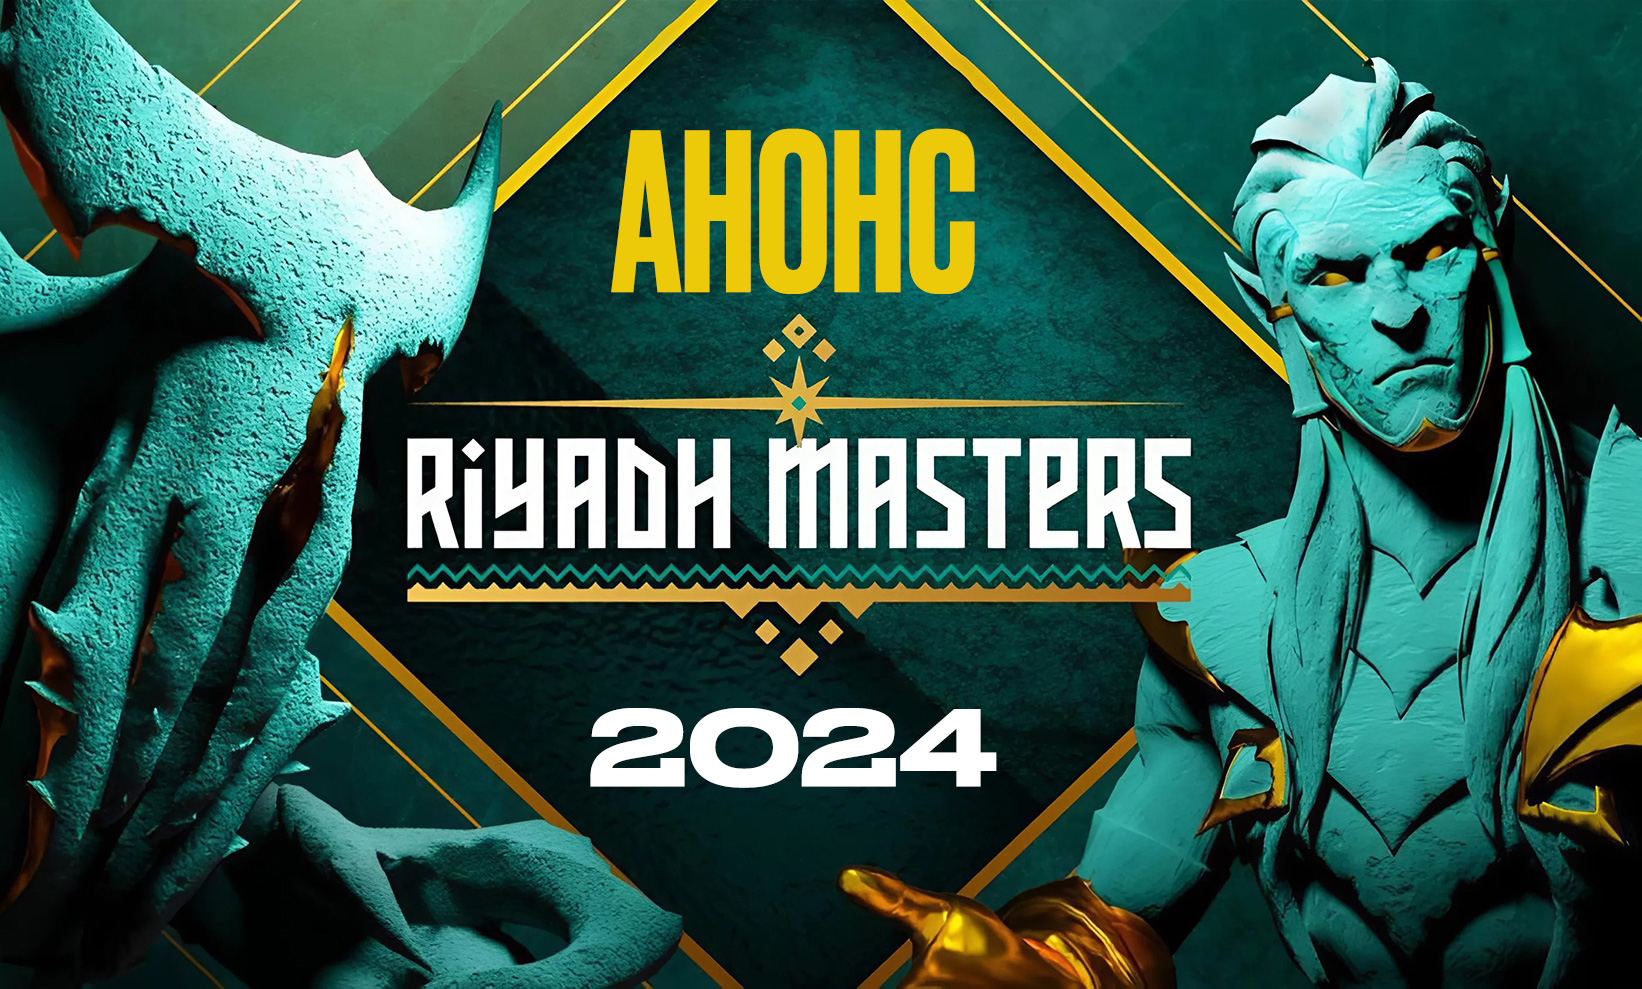 Riyadh Masters 2024 Dota 2: даты проведения, где проходит, фавориты, участники турнира Рияд Мастерс 2024